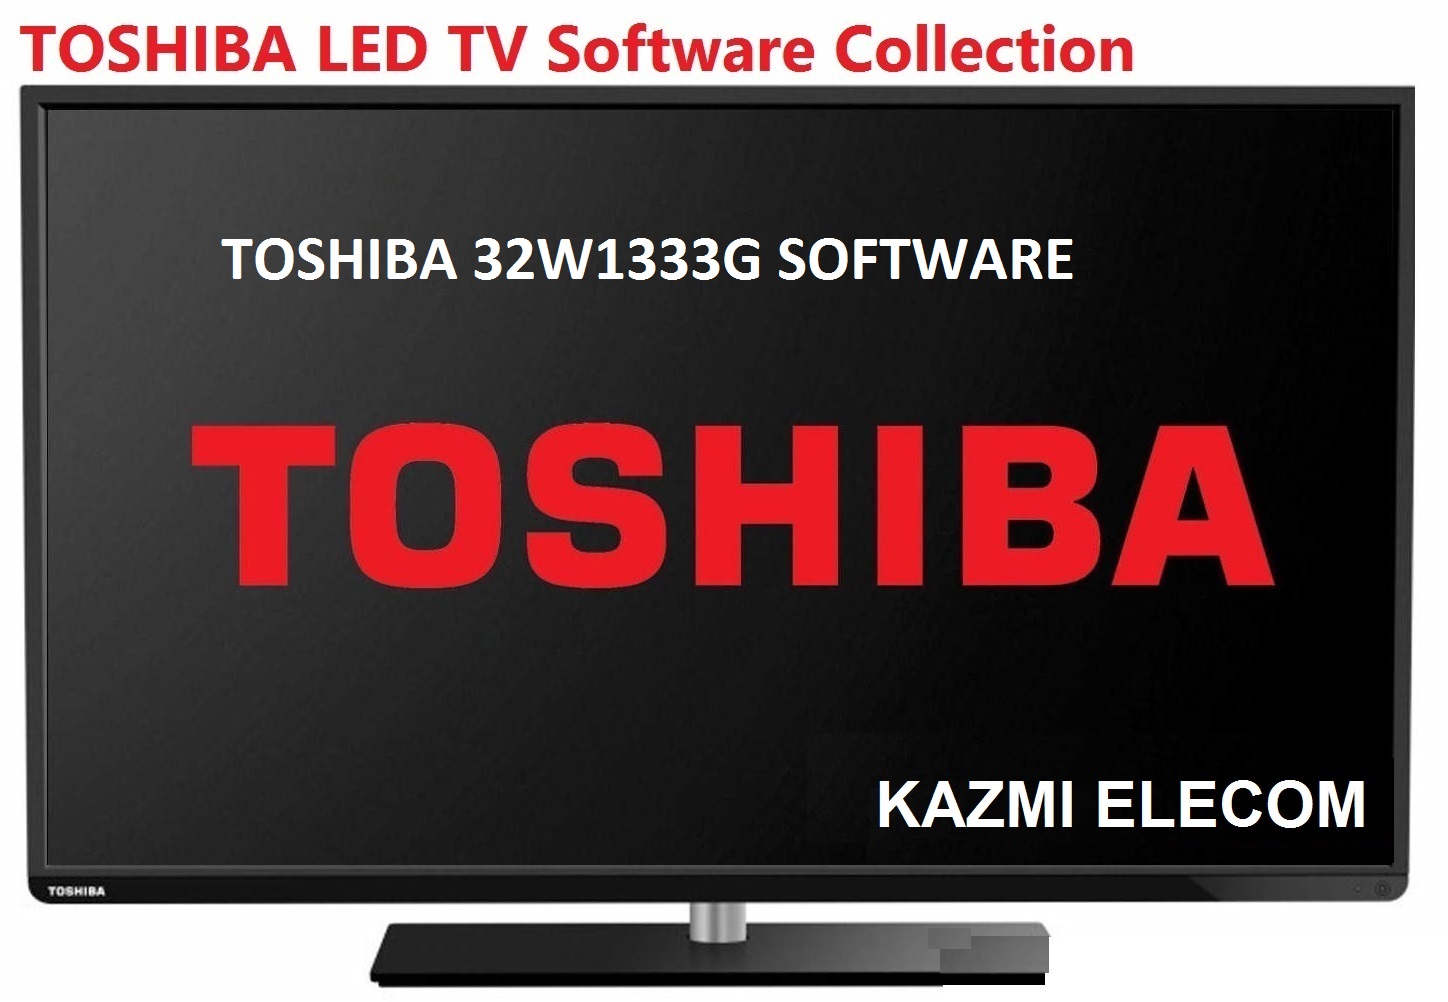 Toshiba 32W1333G